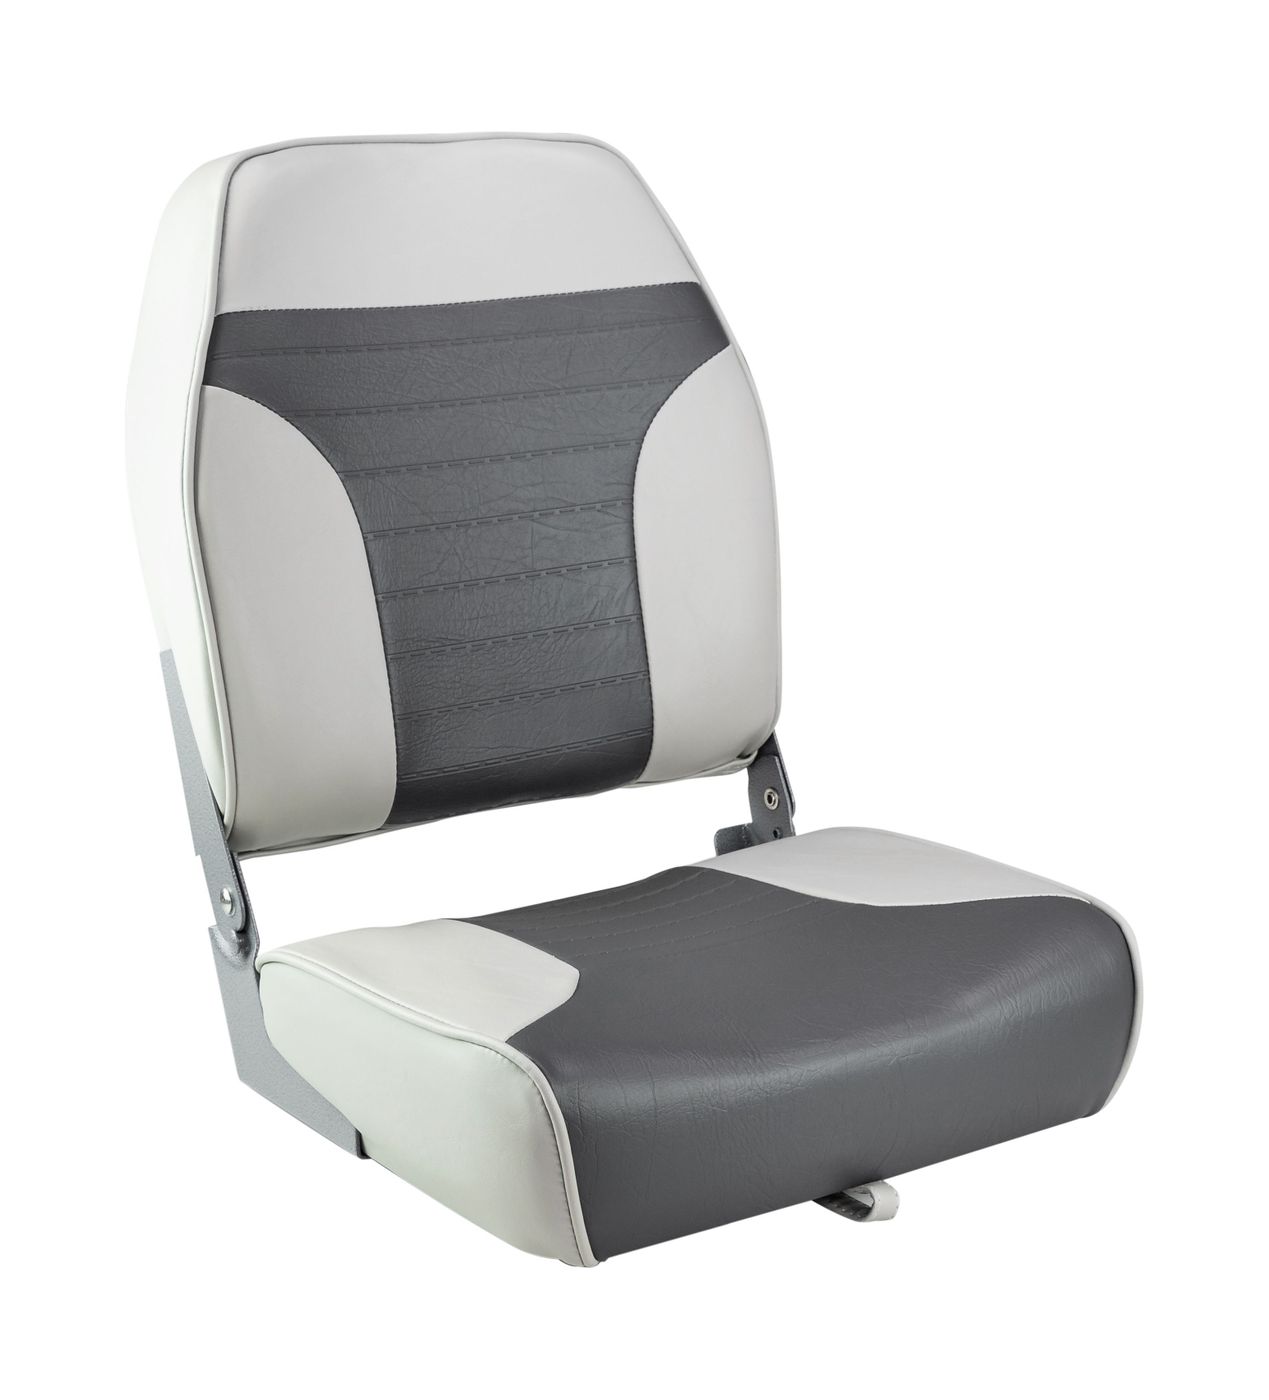 Кресло складное мягкое ECONOMY с высокой спинкой, цвет серый/темно-серый 1040663 кресло складное мягкое economy с высокой спинкой дву ное серый синий 1040661